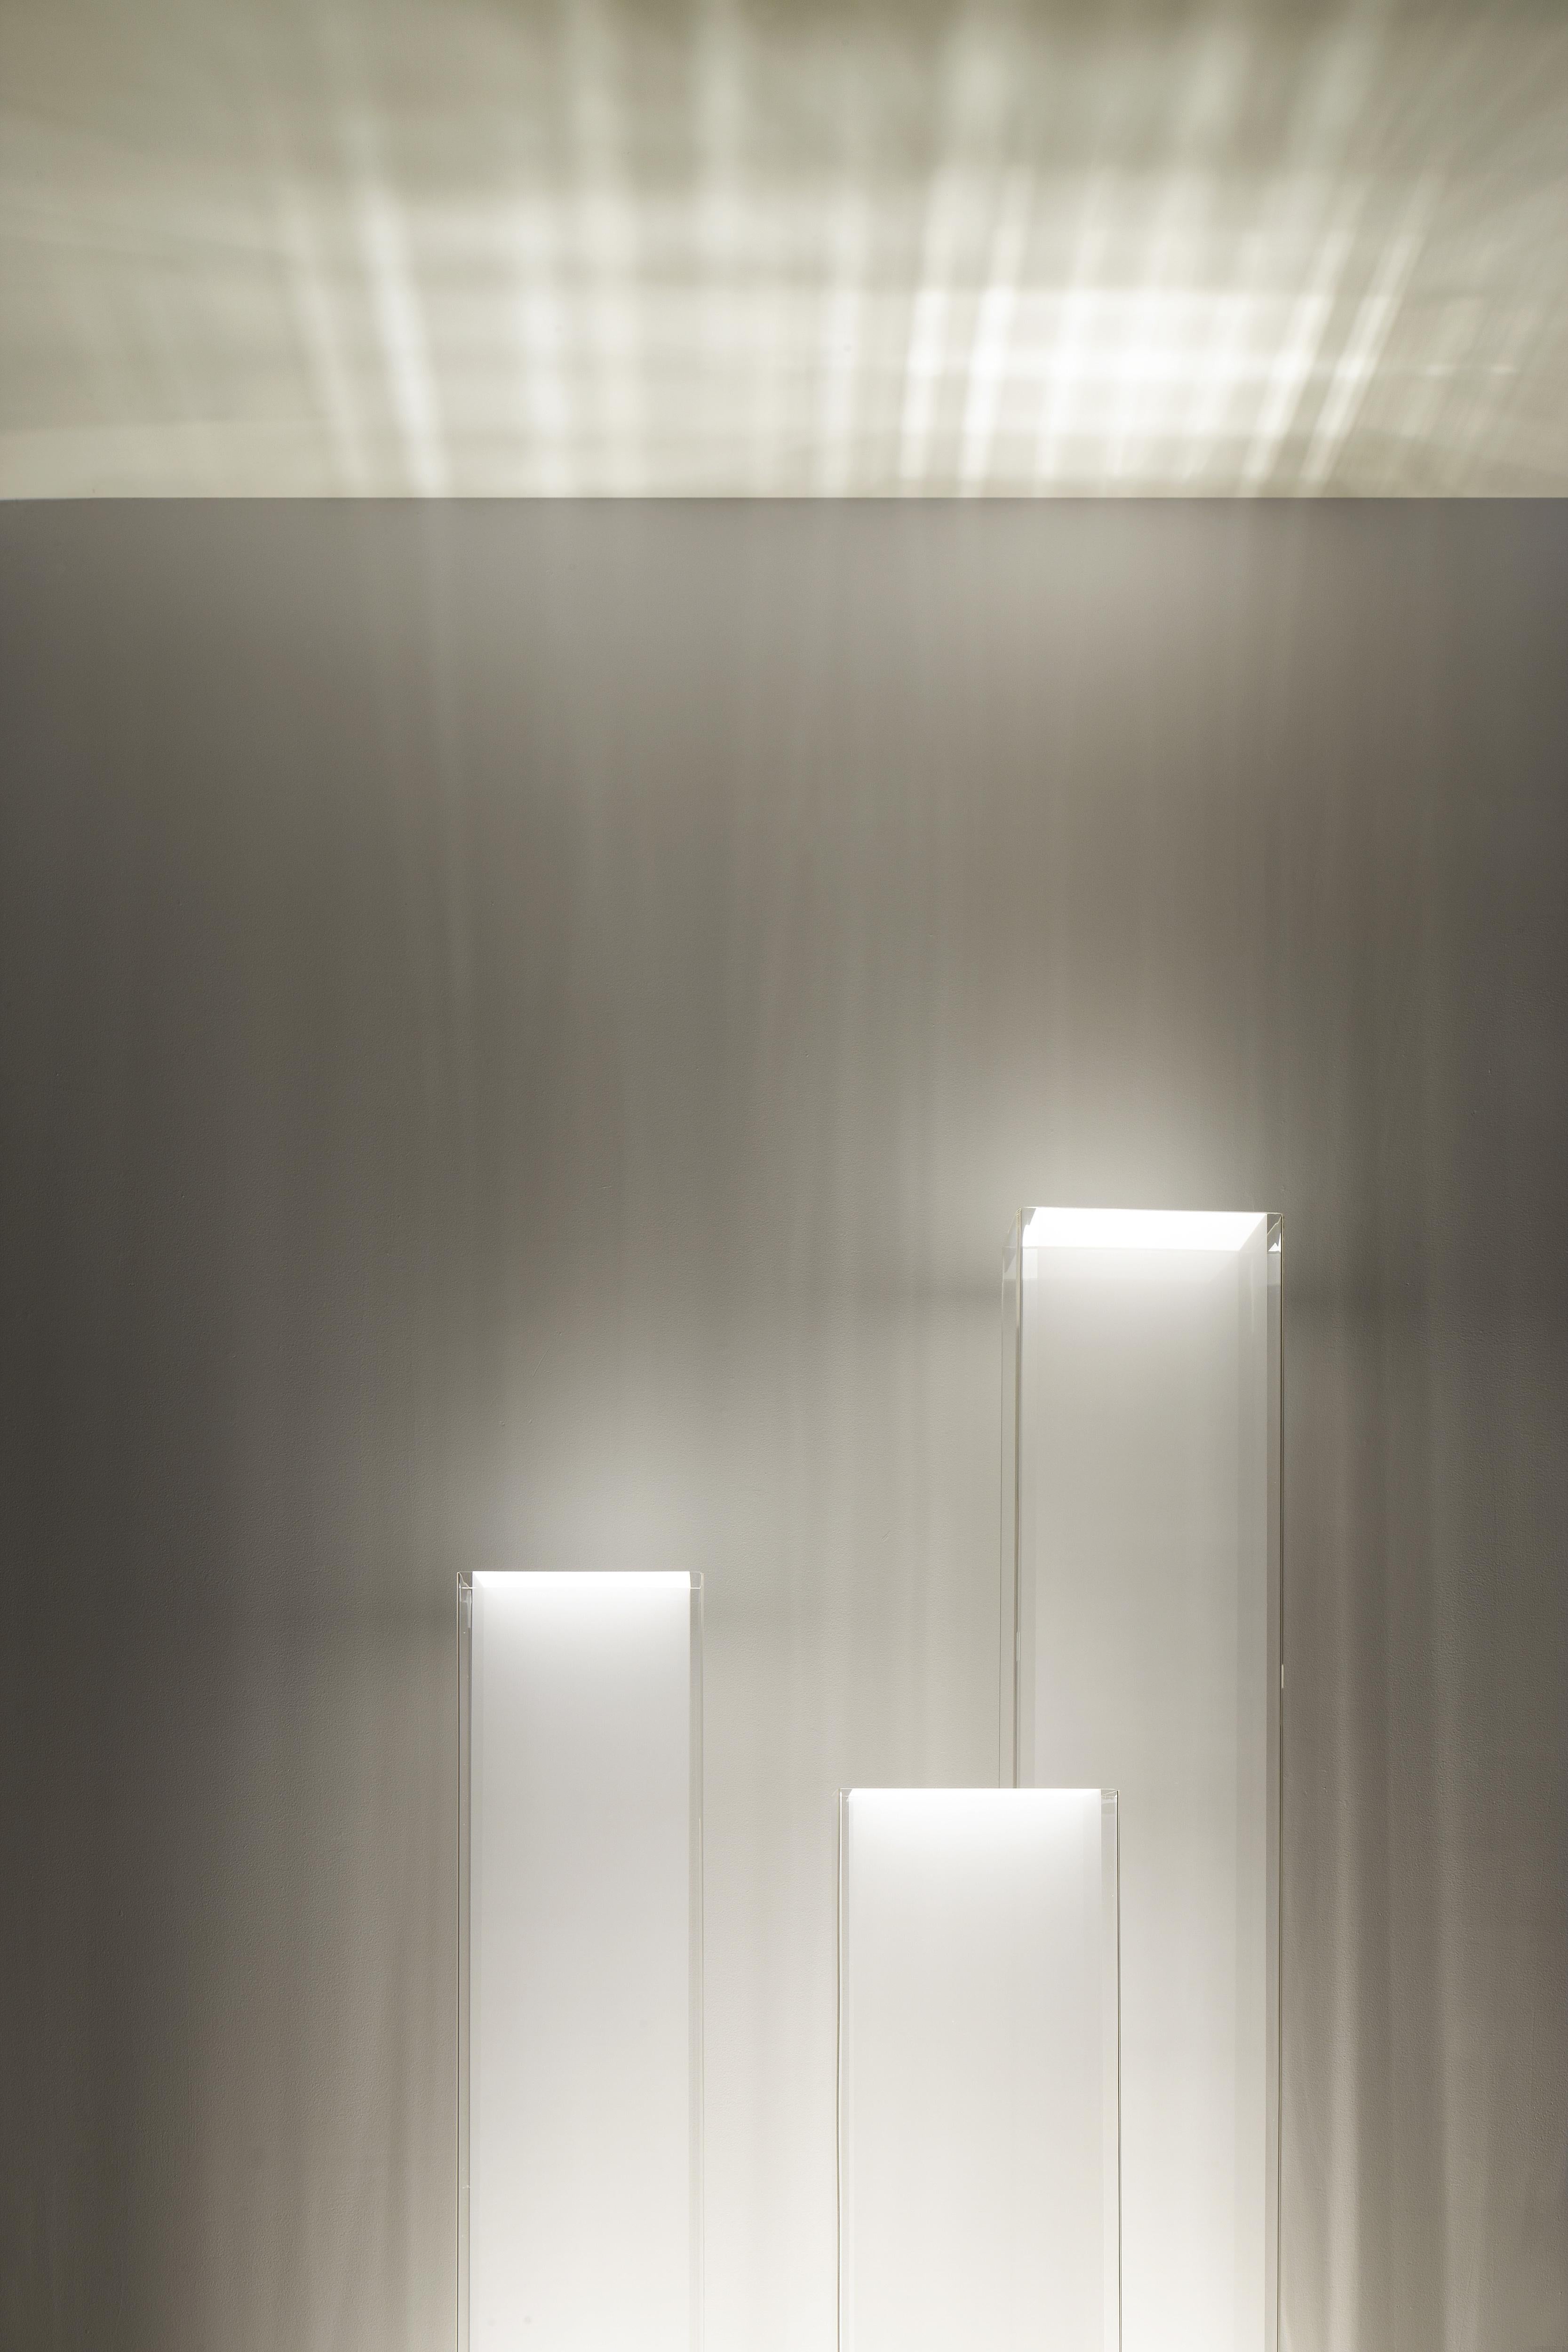 La lampe intemporelle Cortina est d'une simplicité architecturale. Son abat-jour stoïque en acrylique transparent est doté d'un diffuseur sensuel en tissu à mailles translucides qui protège la source lumineuse graduable de la lampe. Cortina vous